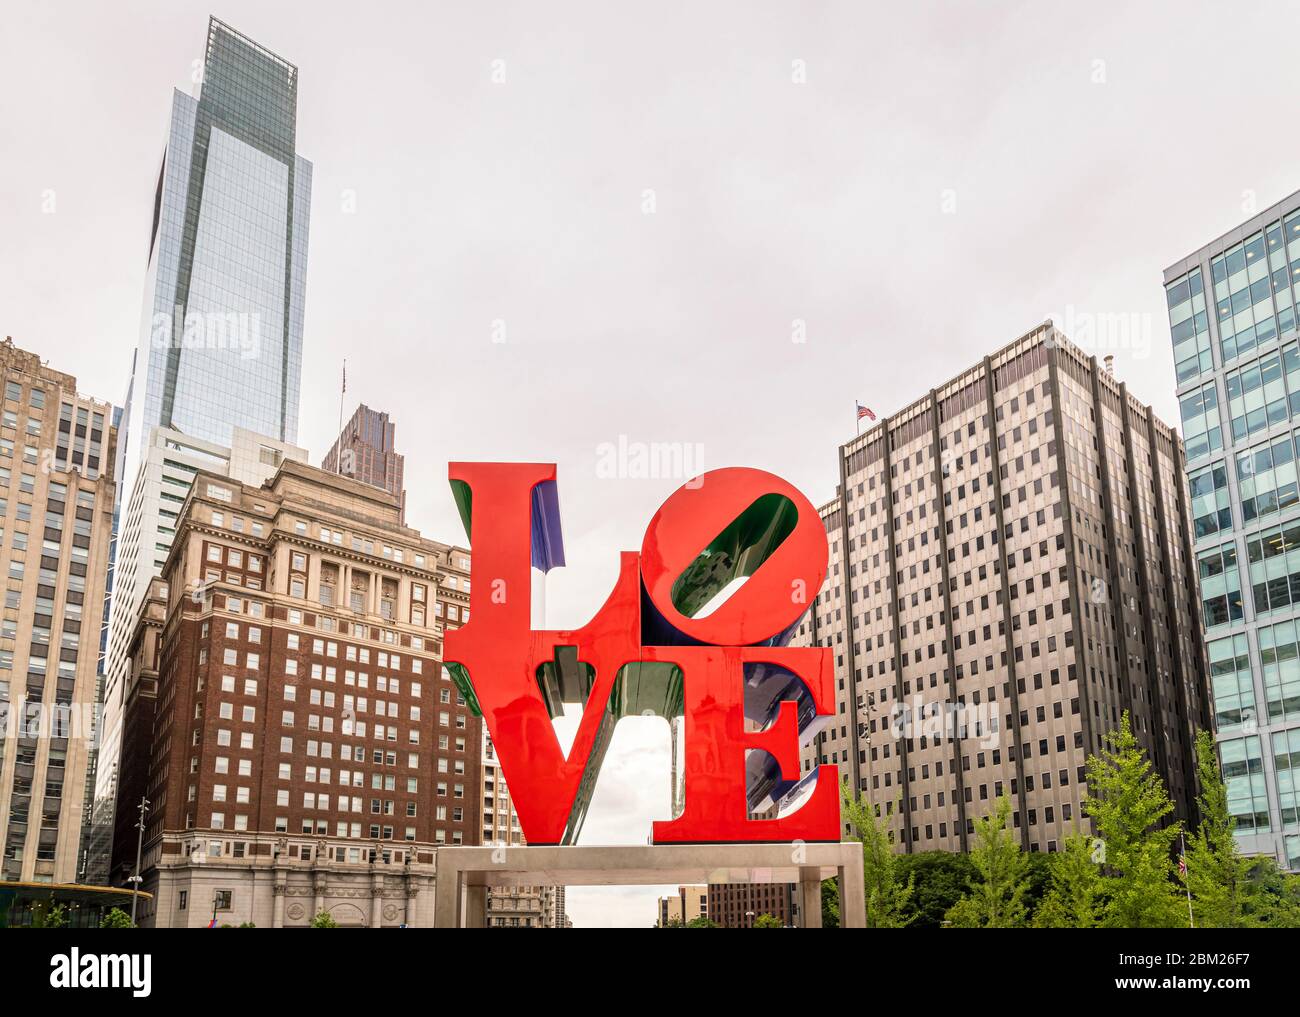 The Love monument in downtown Philadelphia, Pennsylvania, USA. Stock Photo